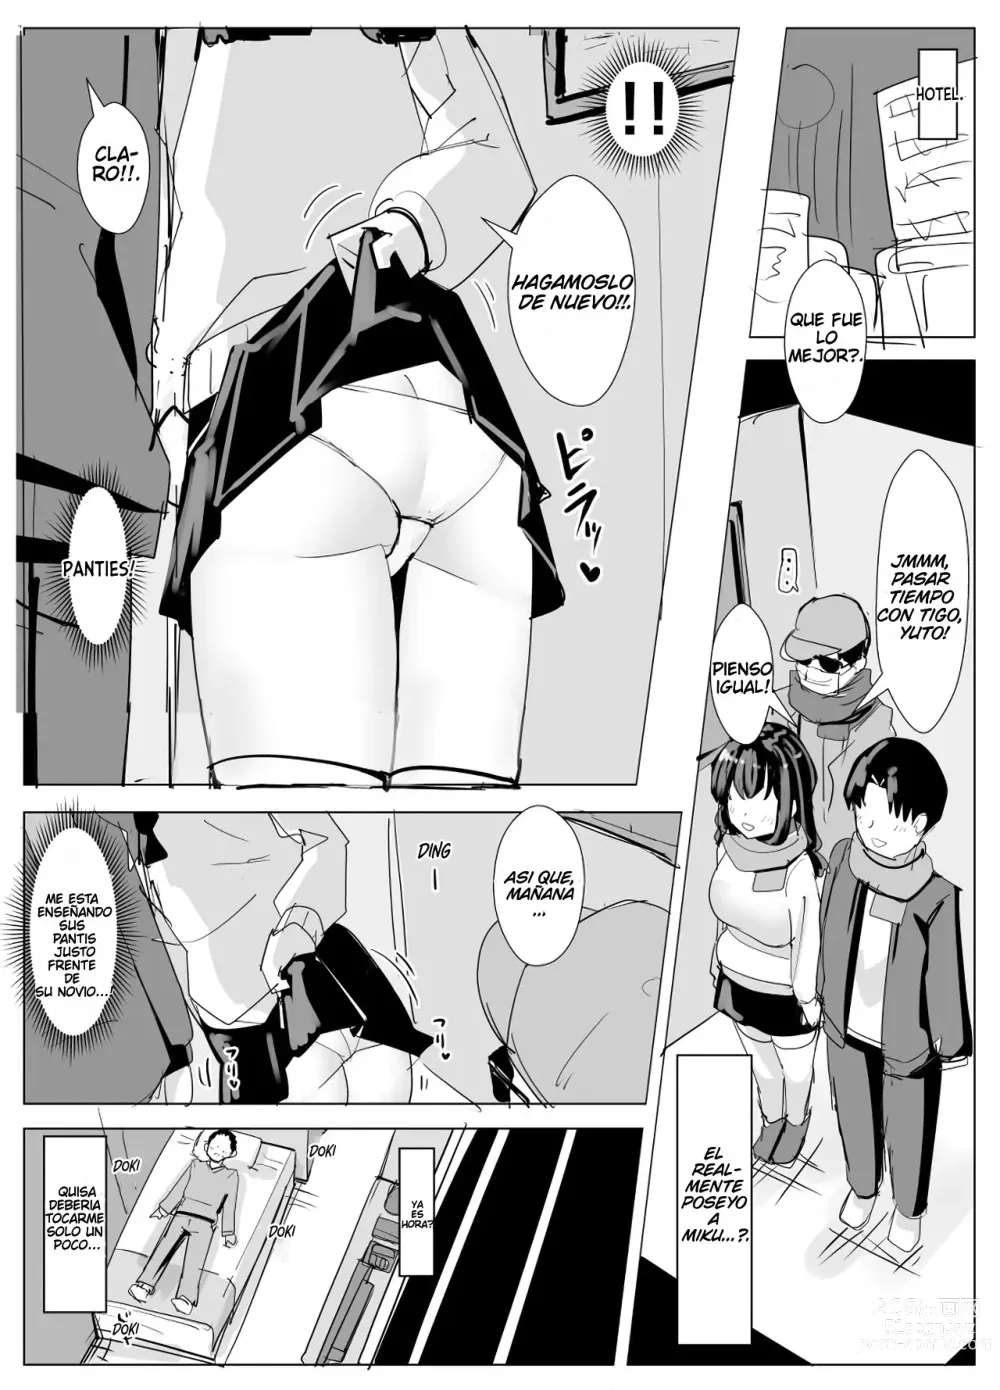 Page 4 of doujinshi Poseyendo e interrumpiendo la cita en disn*y de un compañero de clase.